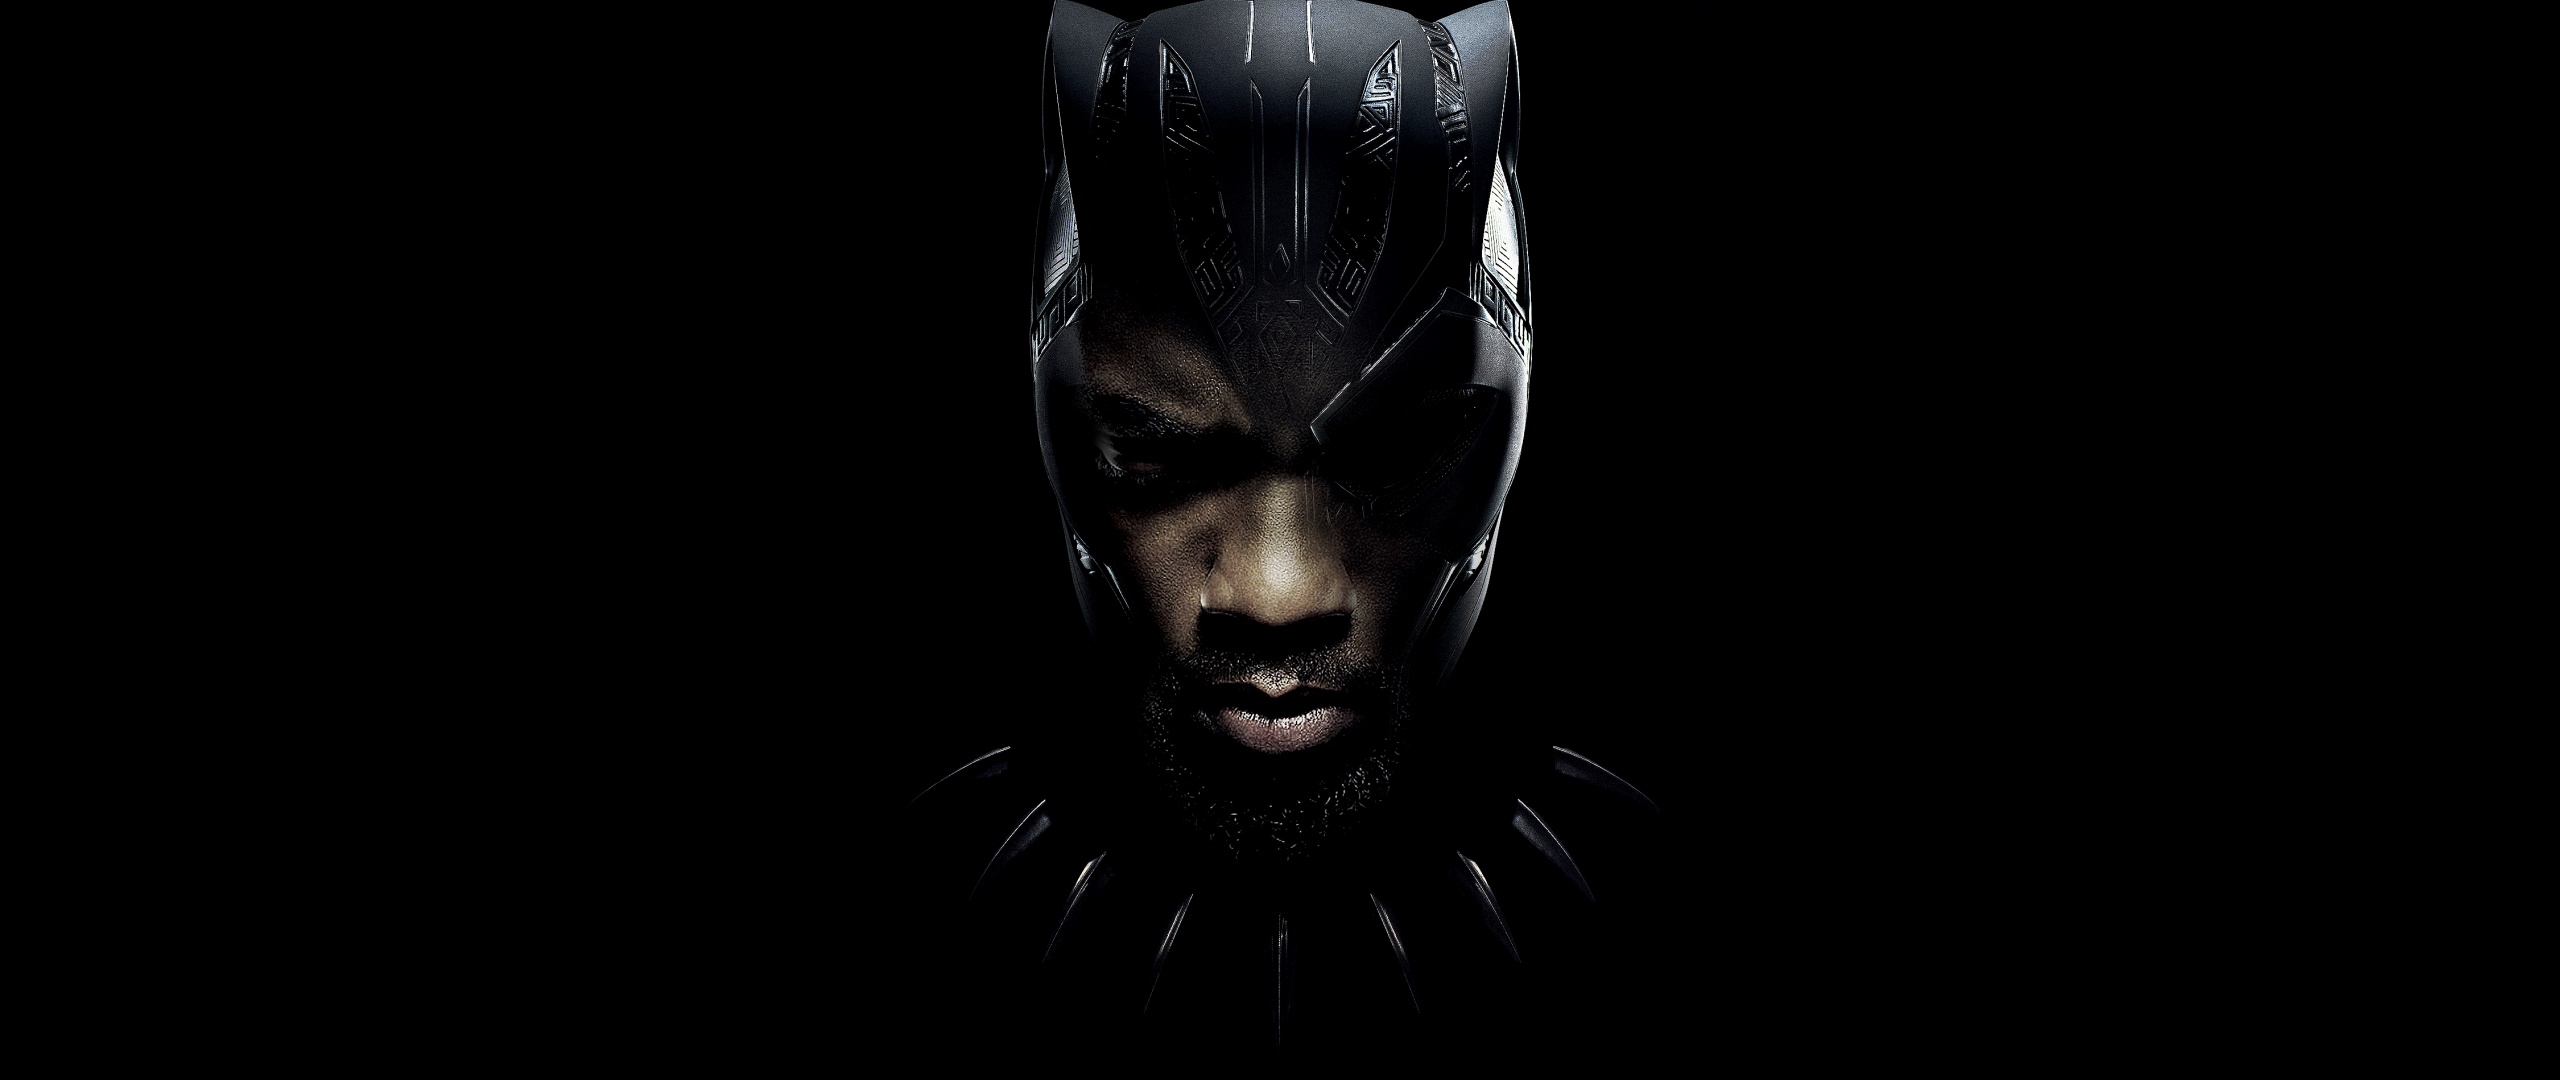 Hình nền Black Panther: Sự thông minh, uy nghi và phong cách lịch lãm của Black Panther được phản ánh một cách tuyệt đẹp qua những hình nền đẹp mắt. Bạn sẽ không thể rời mắt khỏi sự mạnh mẽ và dũng mãnh của nhân vật truyền cảm hứng này. Hãy tận hưởng những khoảnh khắc ấn tượng với hình nền Black Panther.